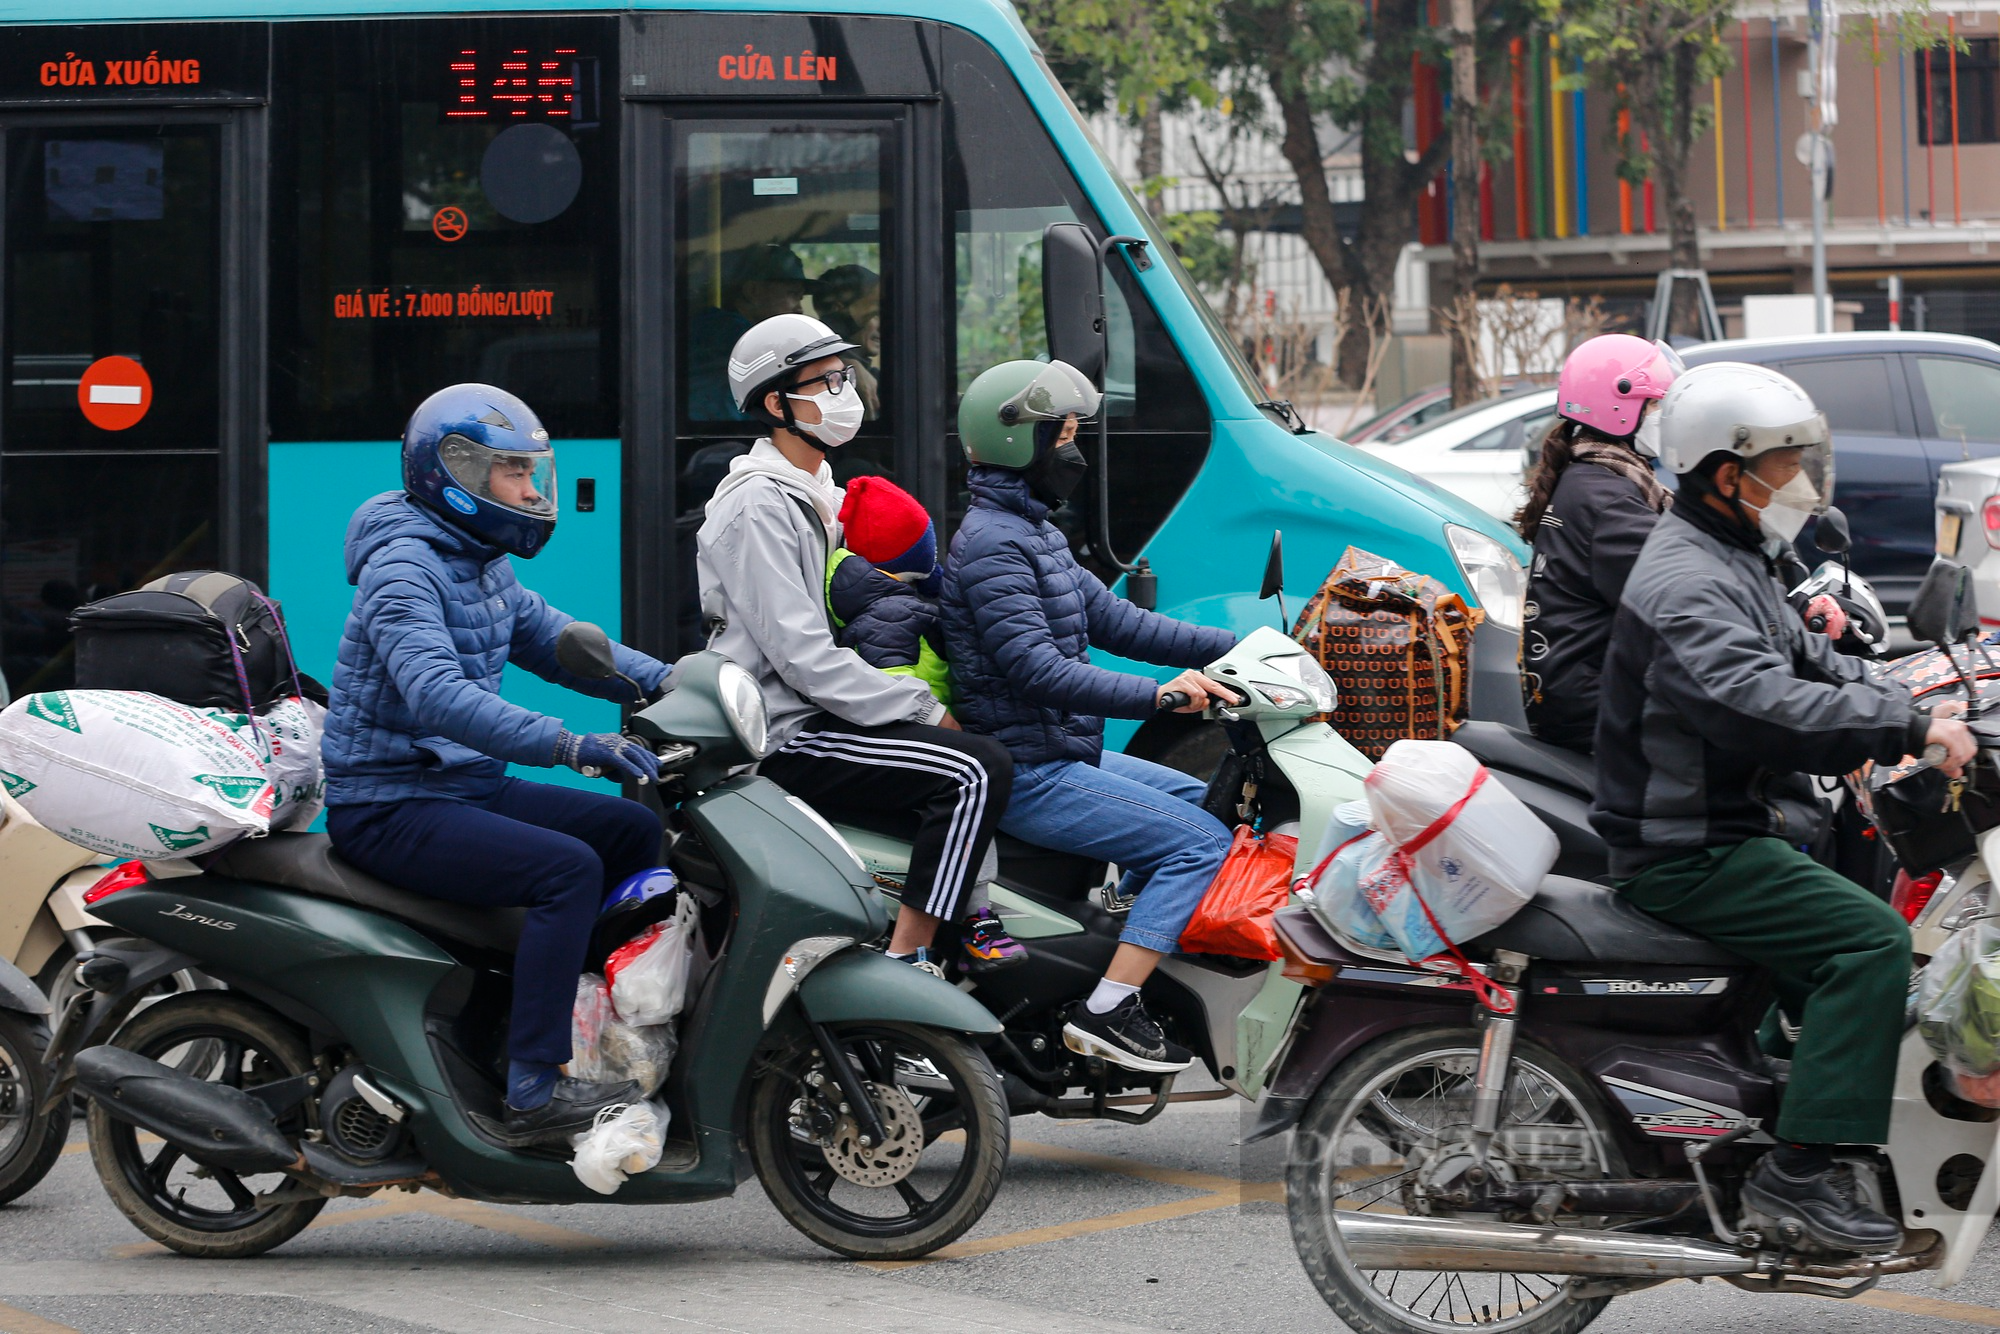 Giao thông cửa ngõ hướng vào trung tâm Hà Nội bắt đầu &quot;nóng&quot;, người dân méo mặt khi đặt xe ôm công nghệ - Ảnh 2.